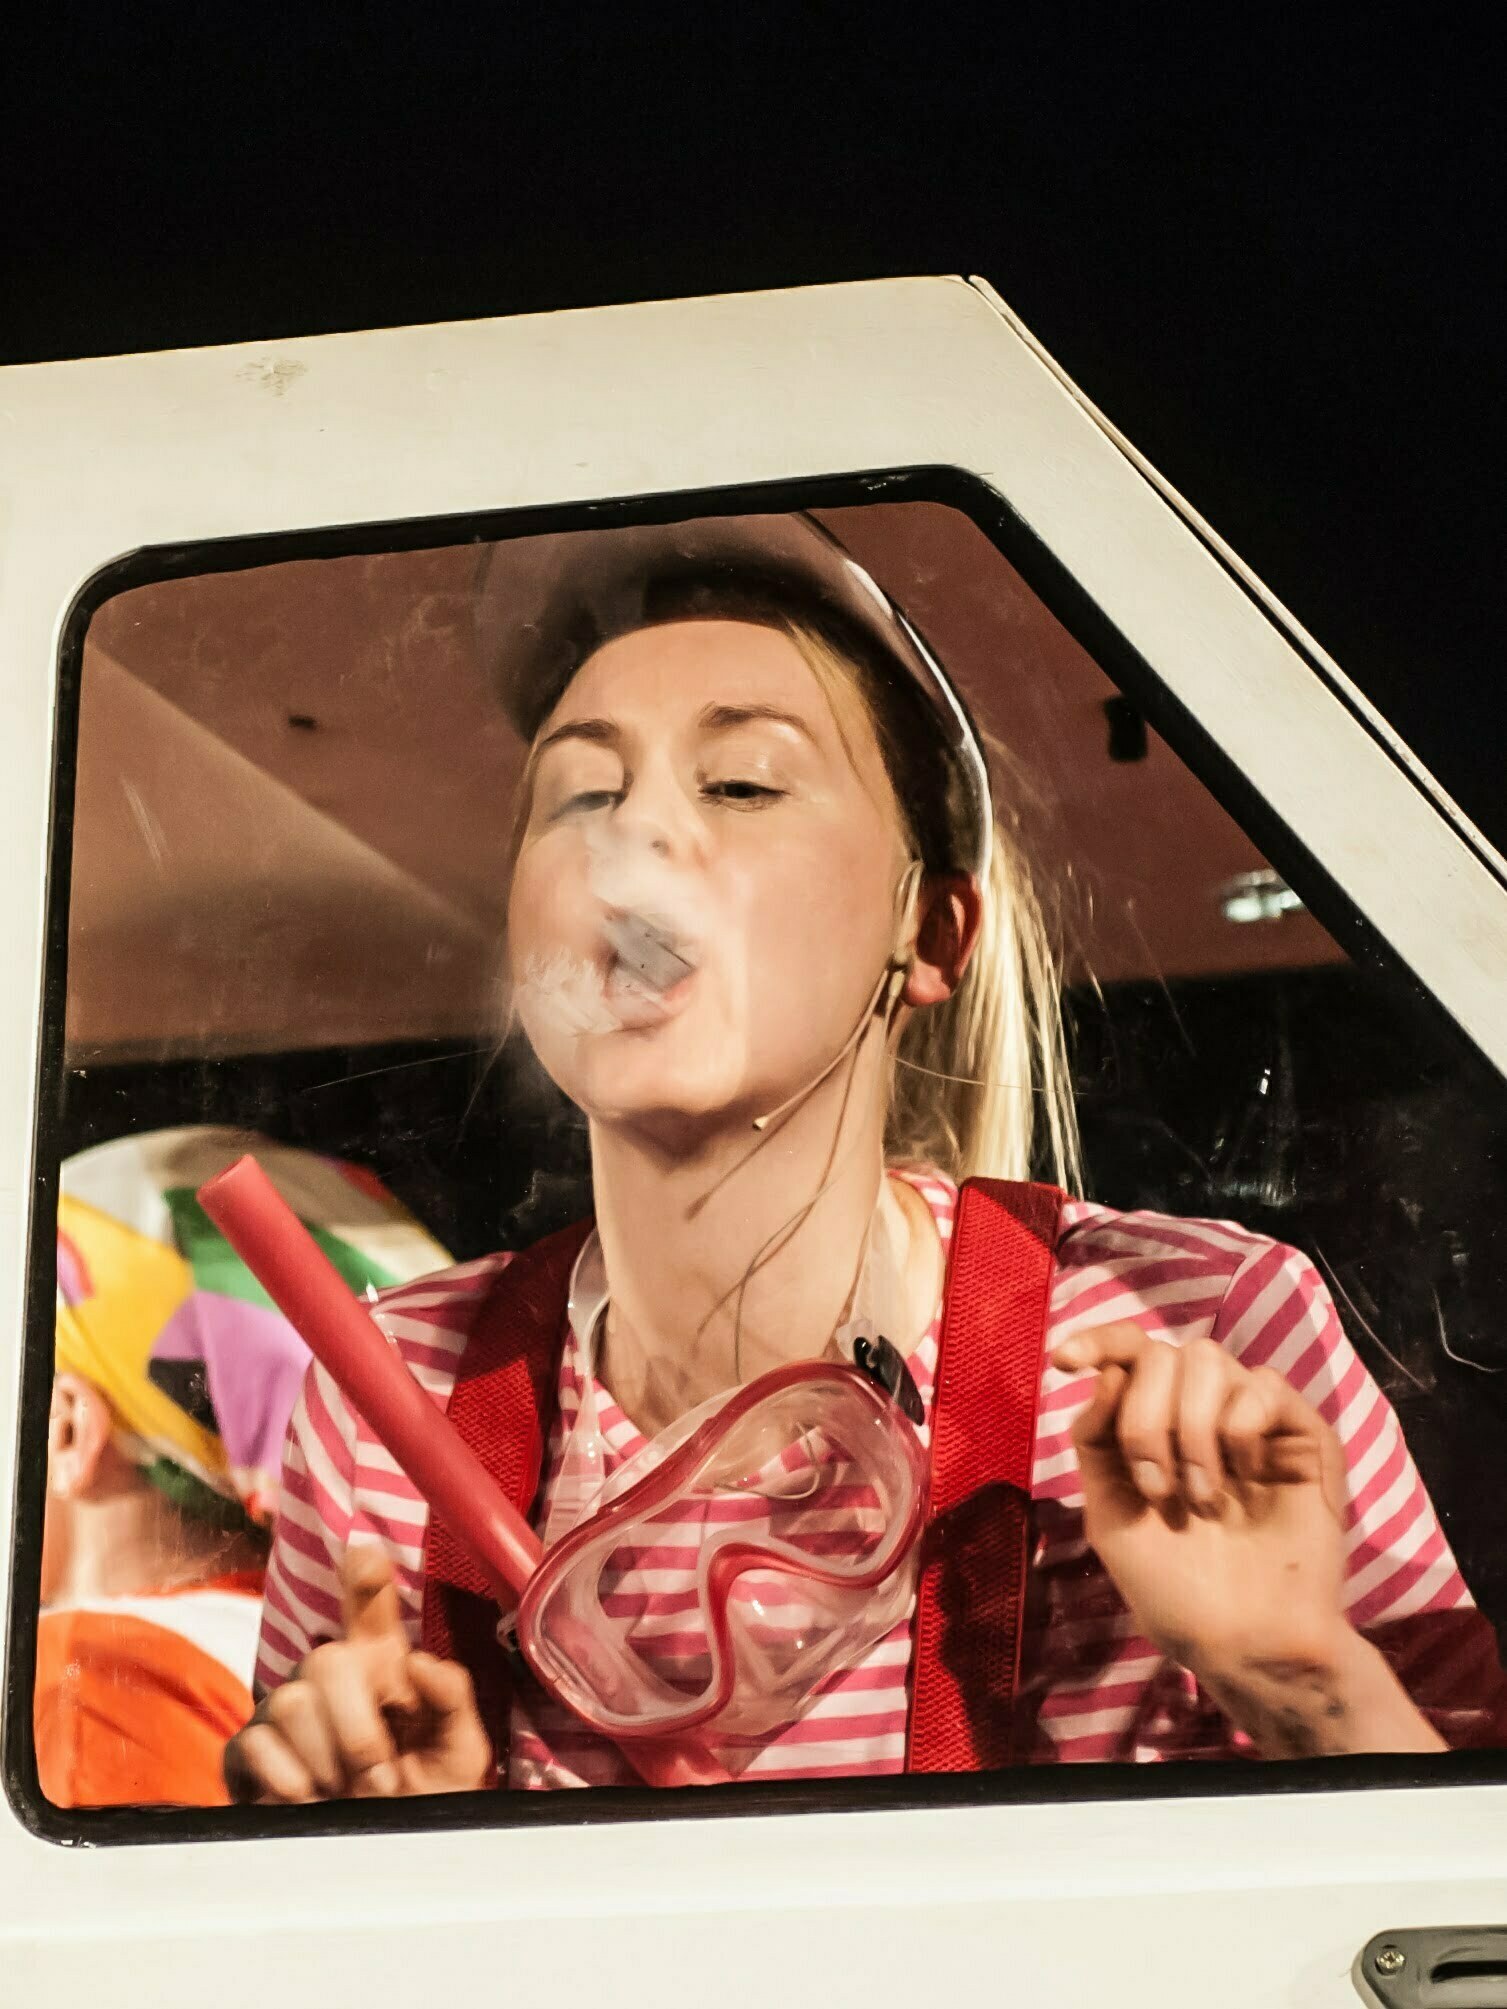 Zdjęcie ze spektaklu Ja, Maluch i morze. Mała dziewczynka siedząca w samochodzie trzyma w ręku okulary do nurkowania. Dmucha na szybę.